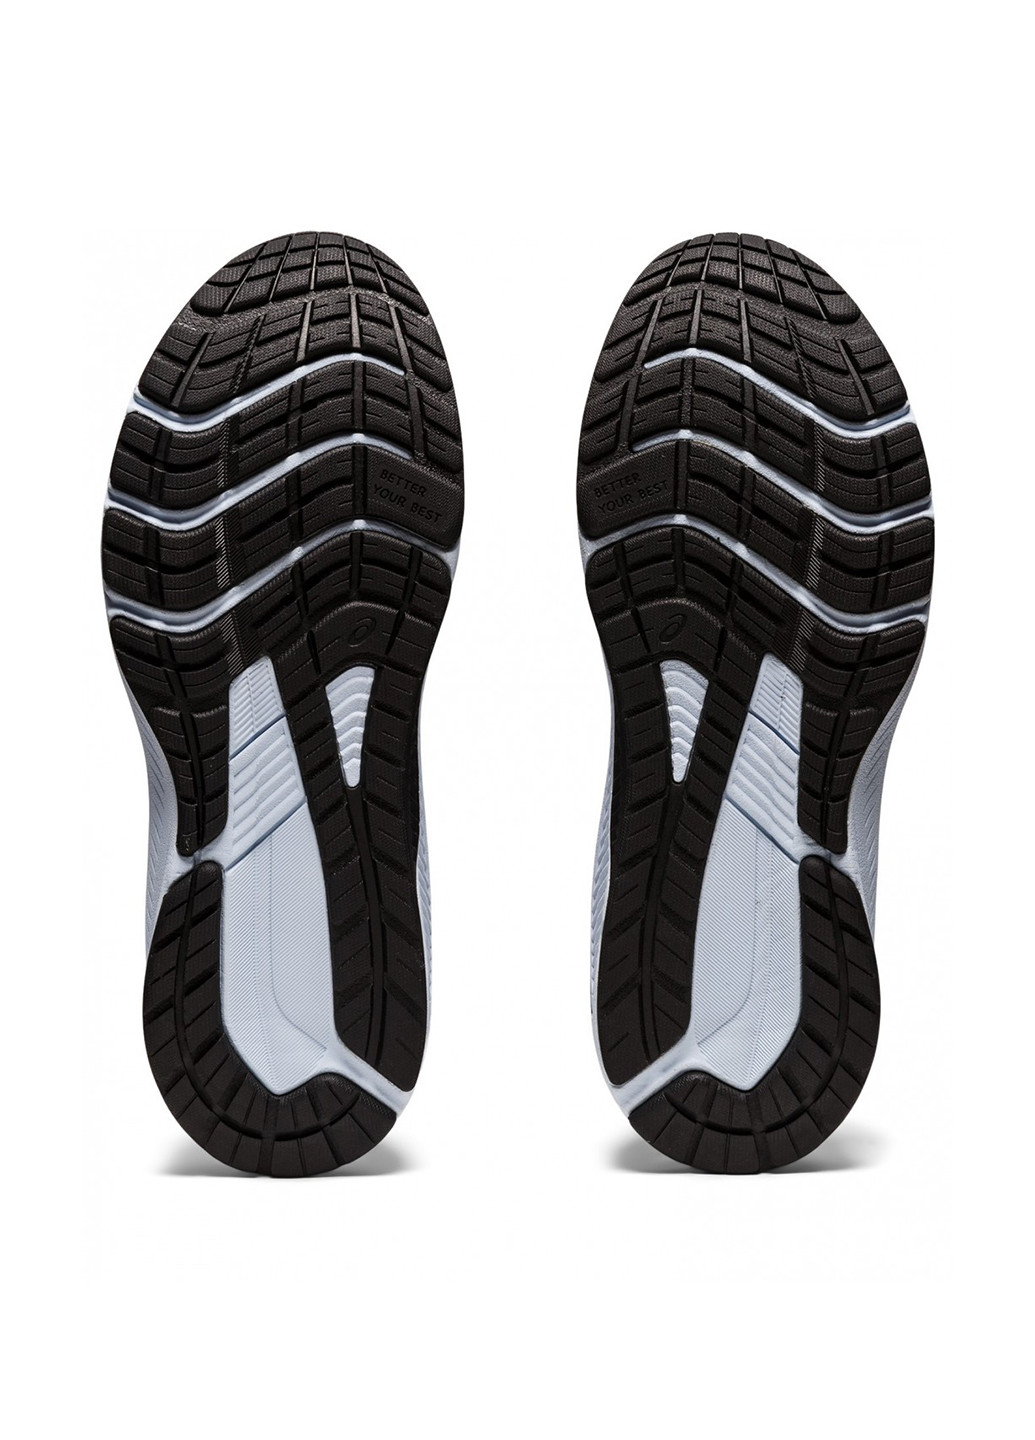 Черные демисезонные кроссовки Asics GT-1000 11 GS